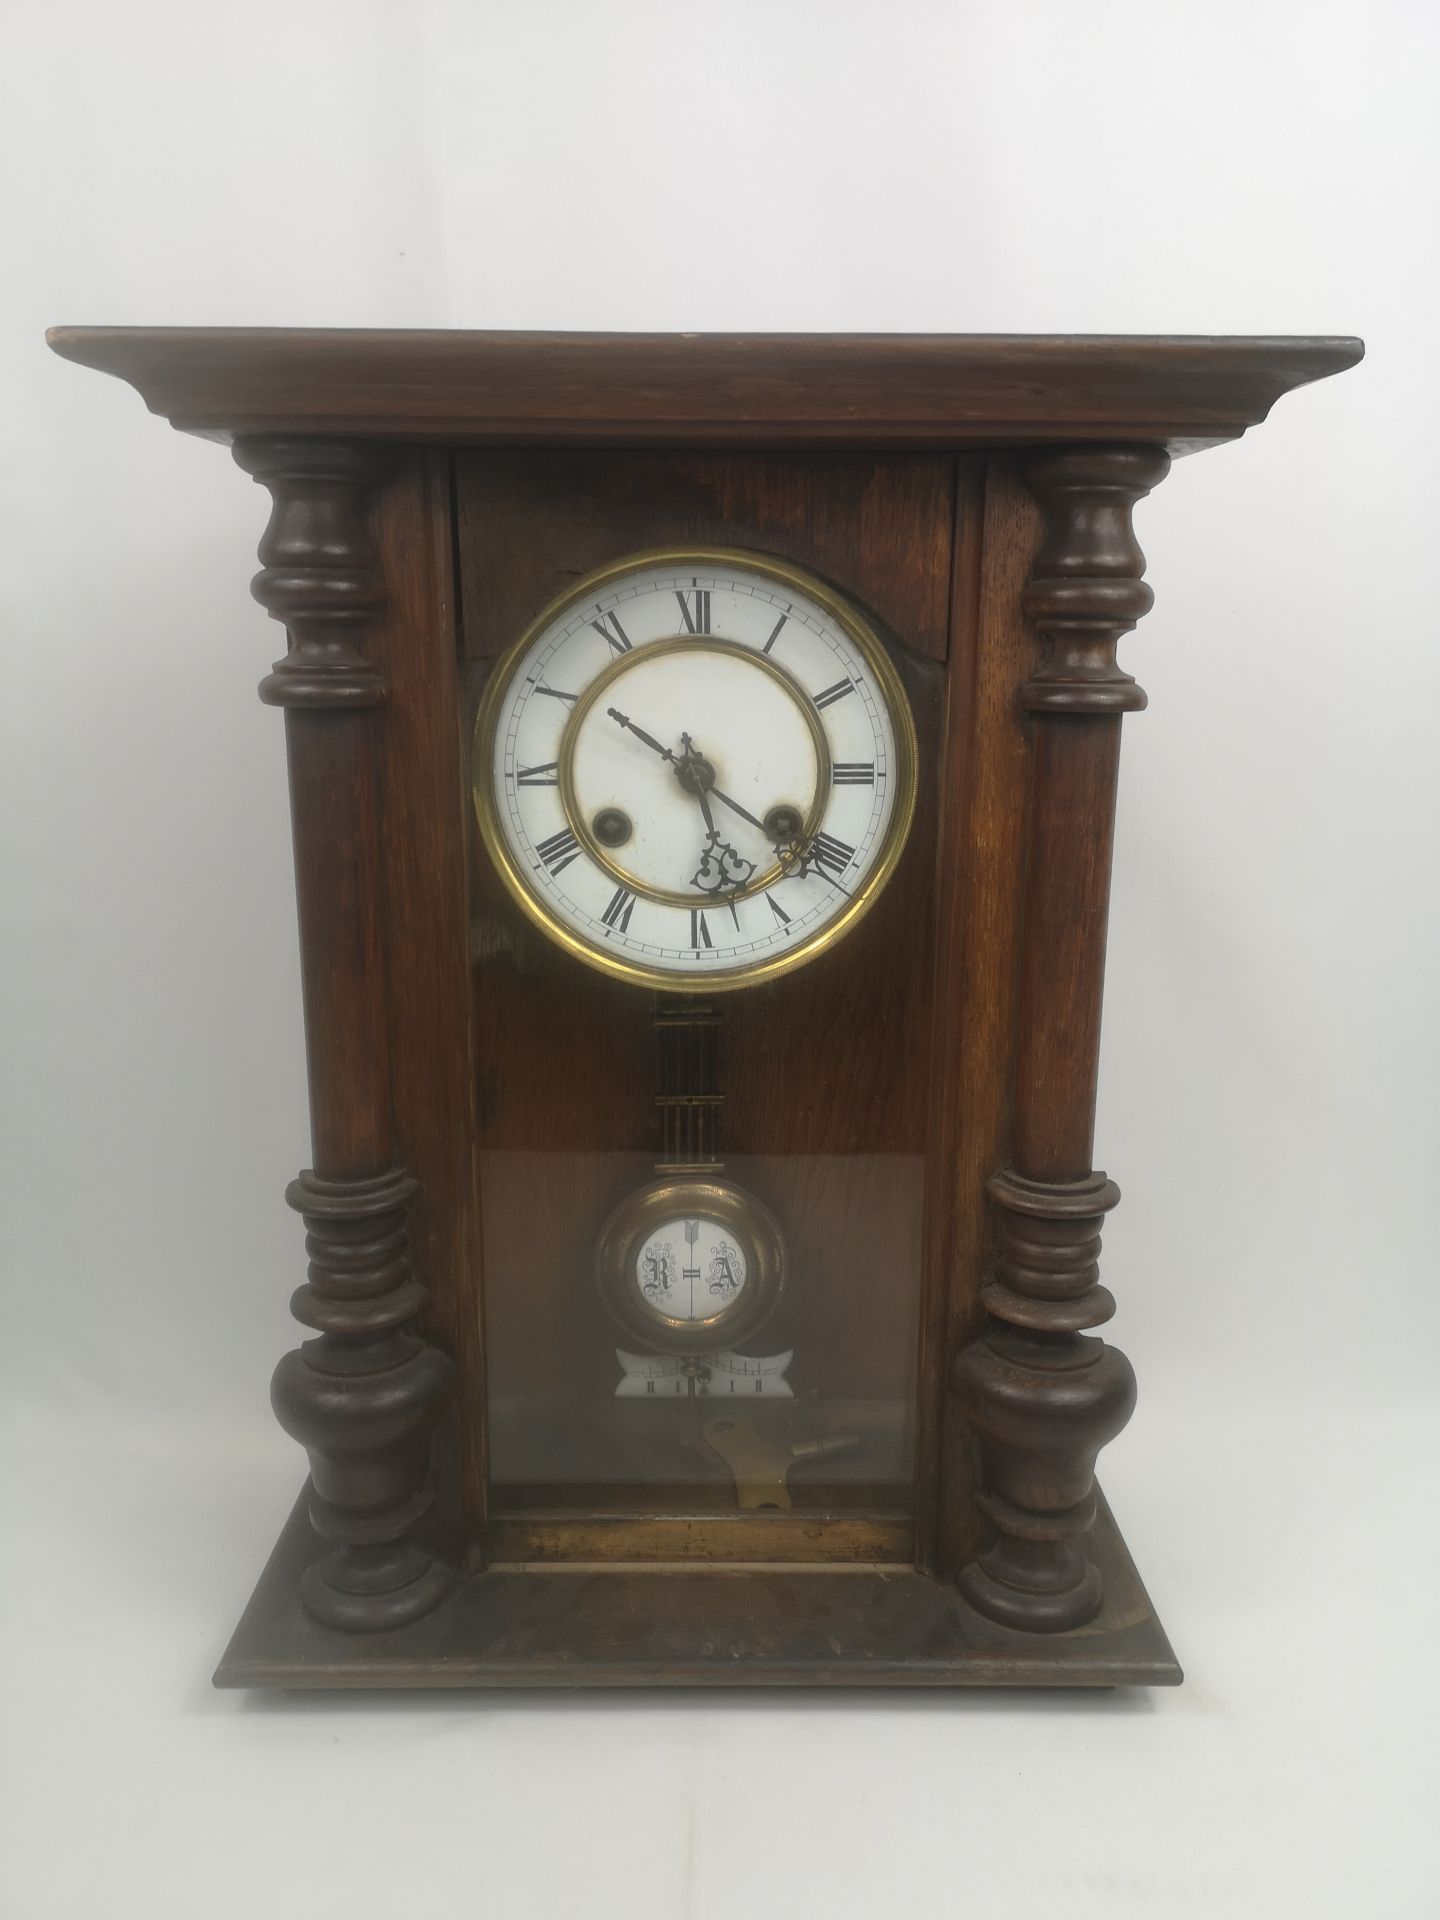 19th century oak cased wall clock